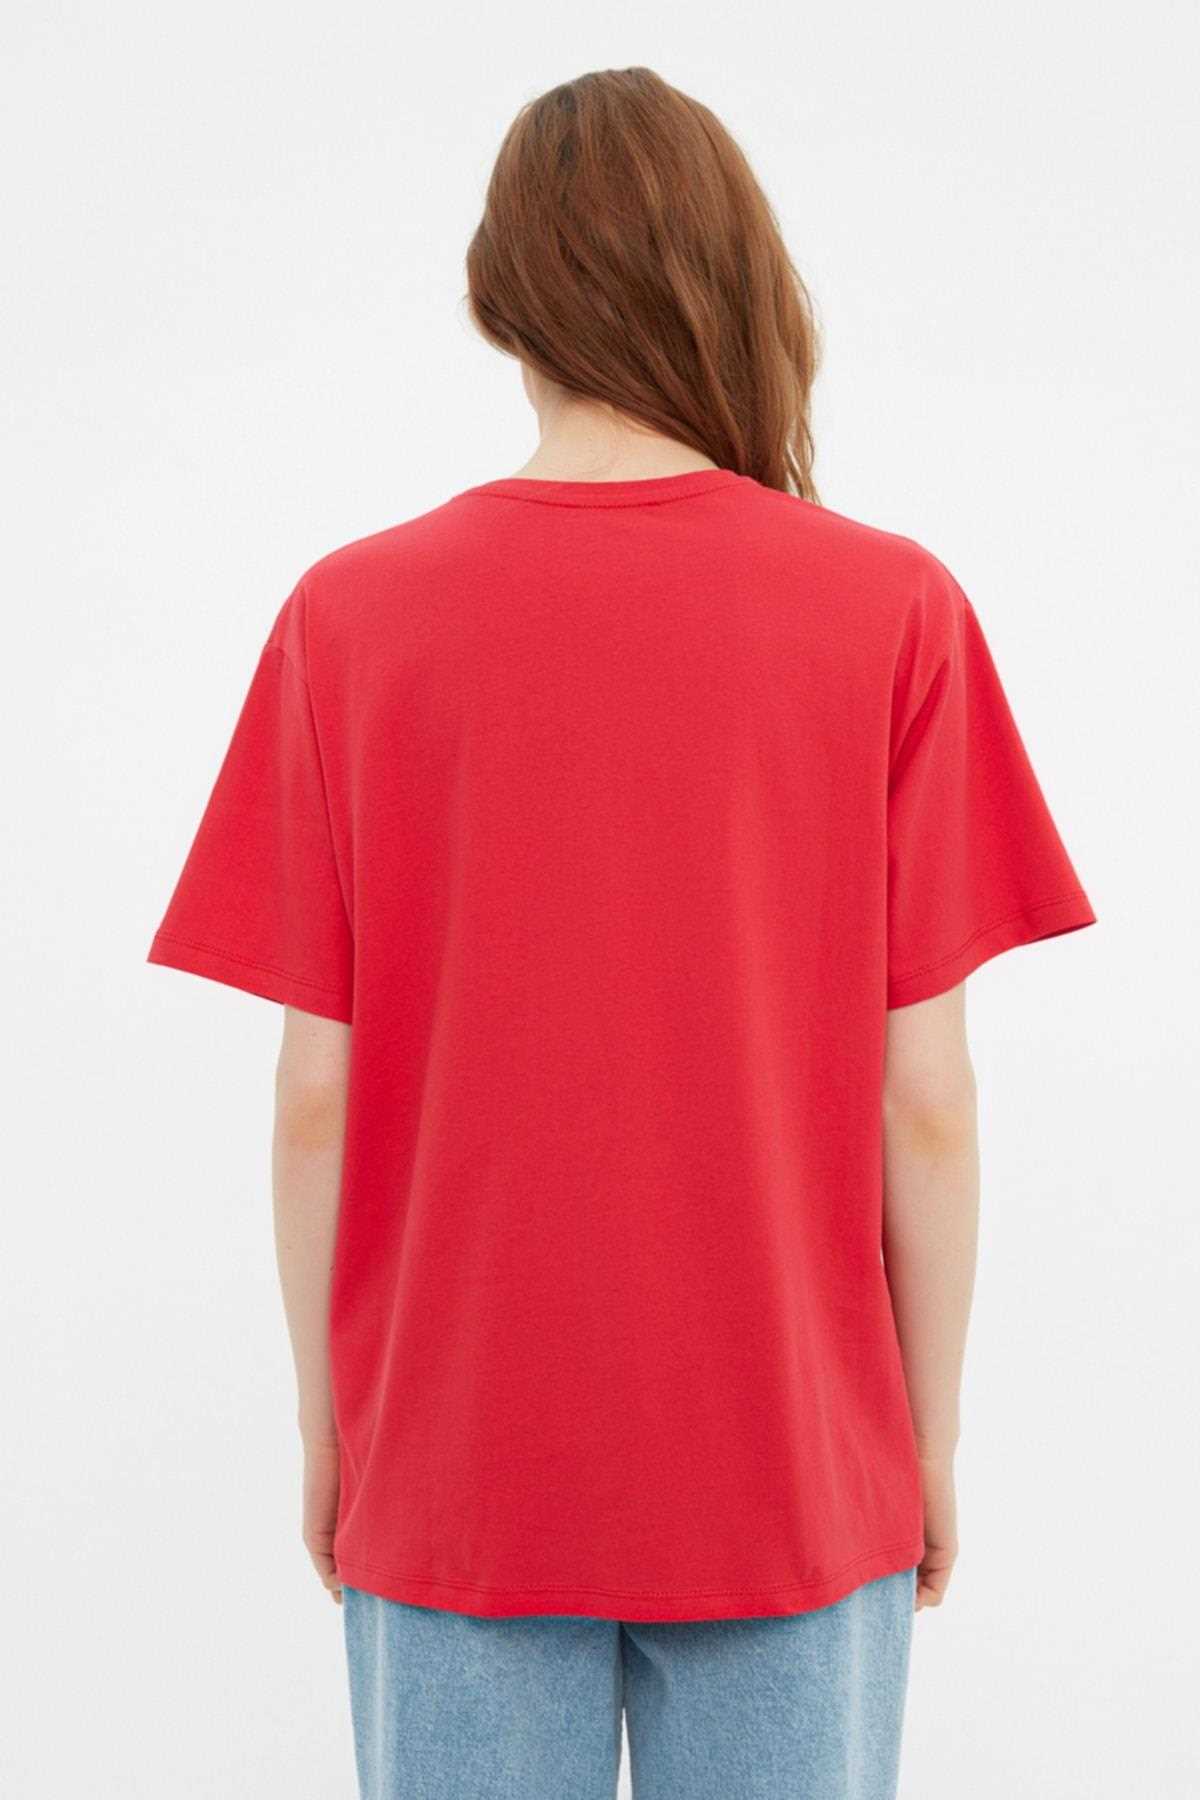 تی شرت ارزان برند ترندیول میلا ترک رنگ قرمز ty217038840